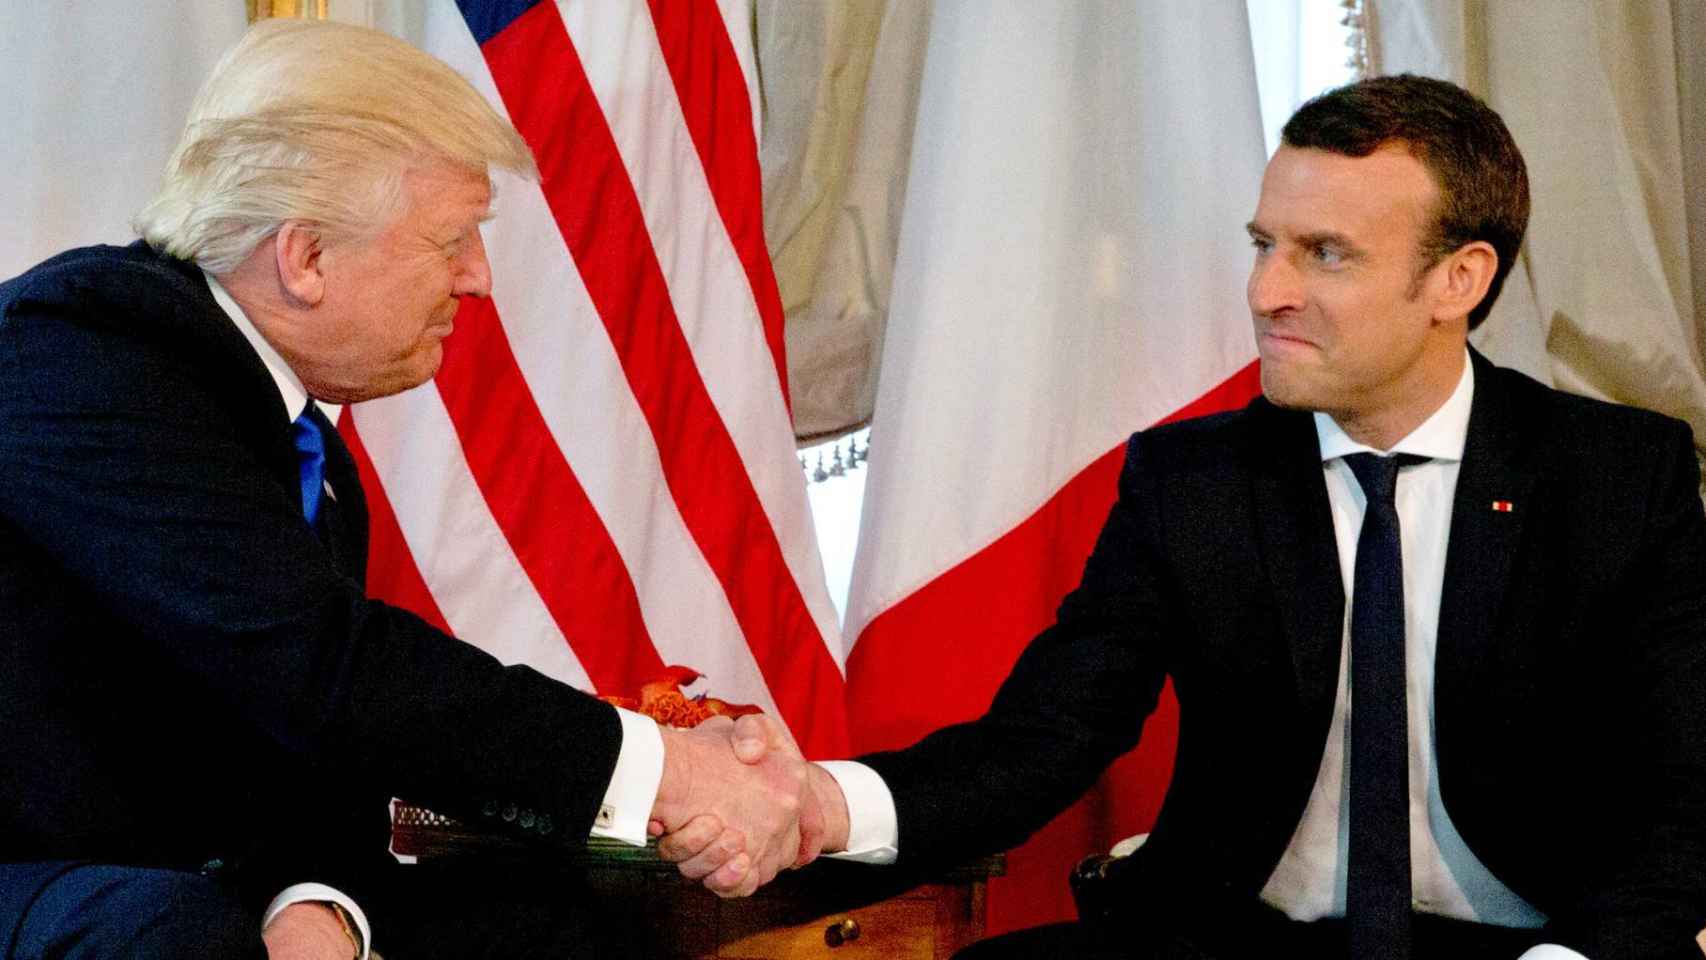 Donald Trump y Emmanuel Macron en una imagen de archivo.